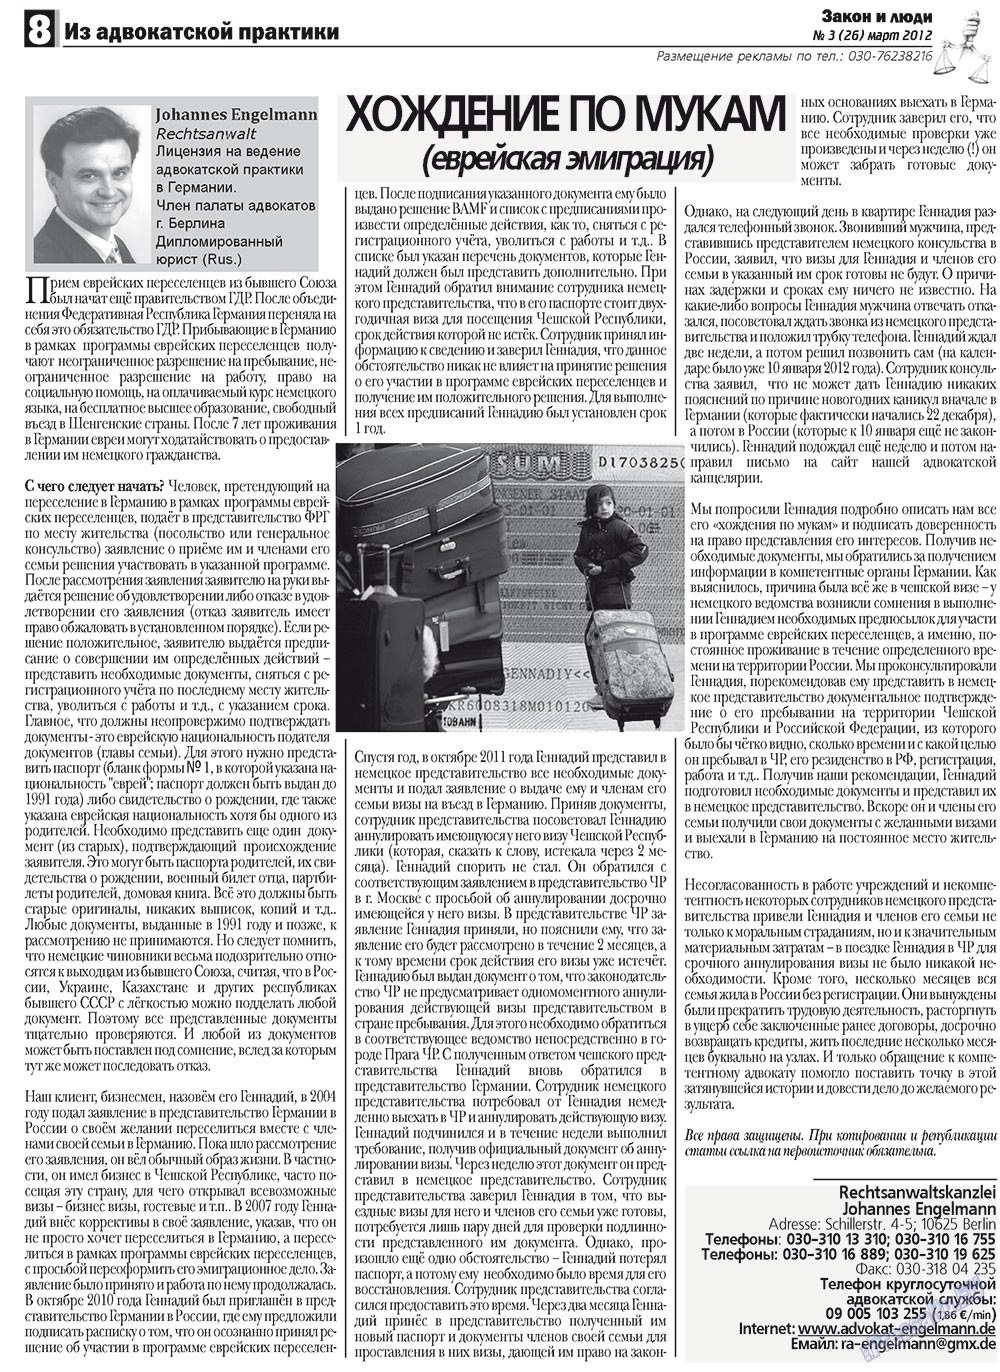 Закон и люди, газета. 2012 №3 стр.8